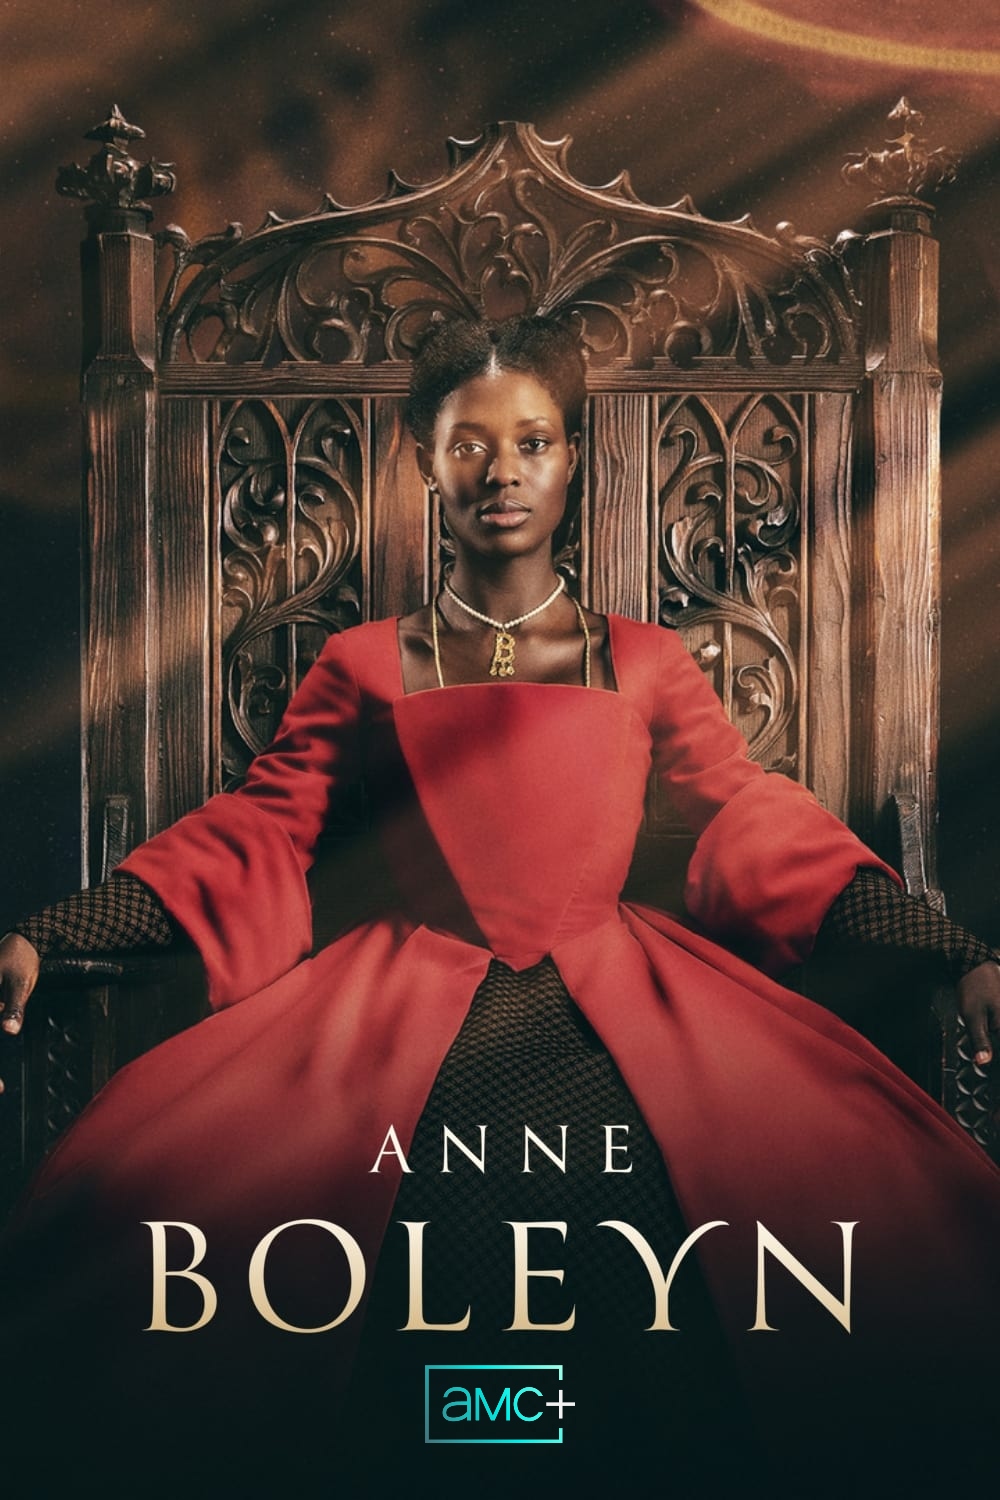 Where to watch Anne Boleyn Season 1